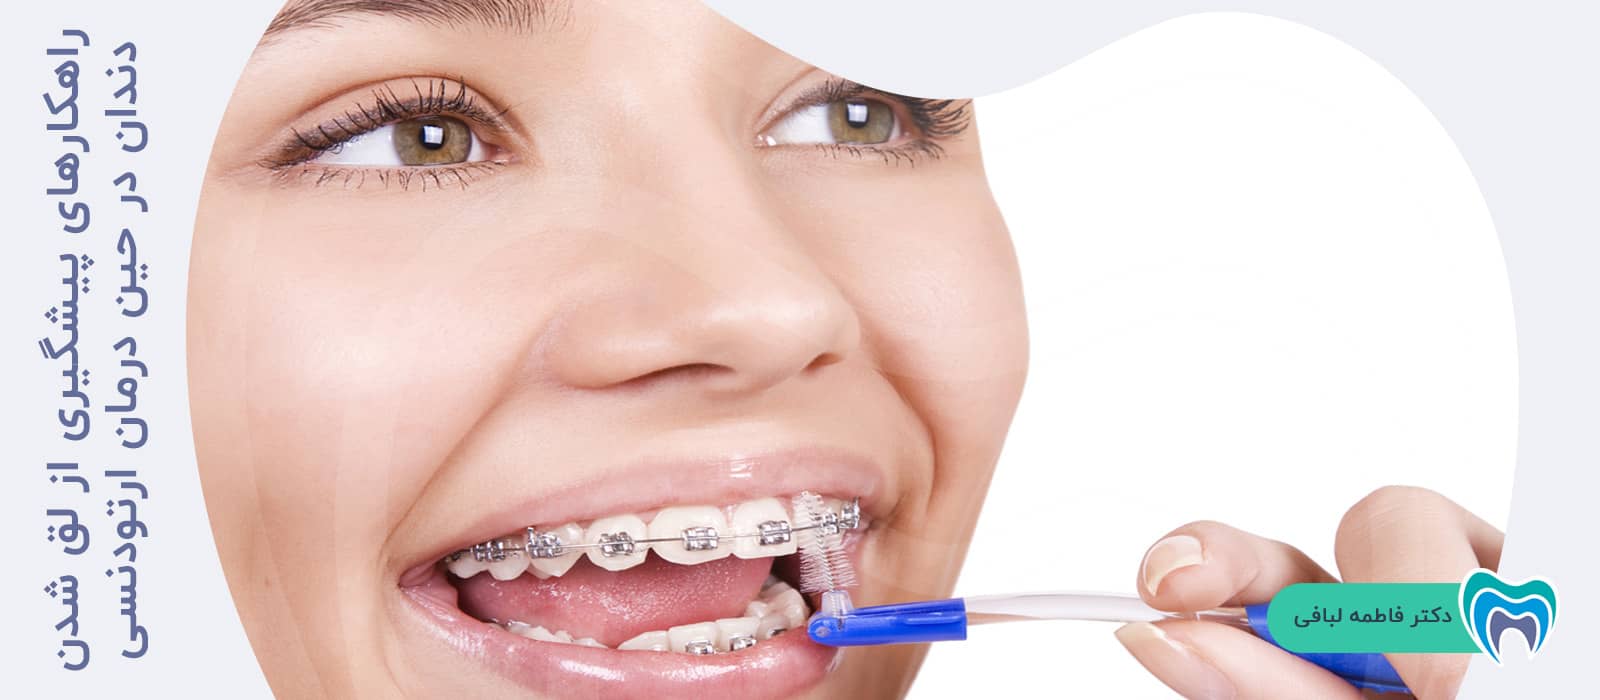 راهکارهای پیشگیری از لق شدن دندان در حین درمان ارتودنسی